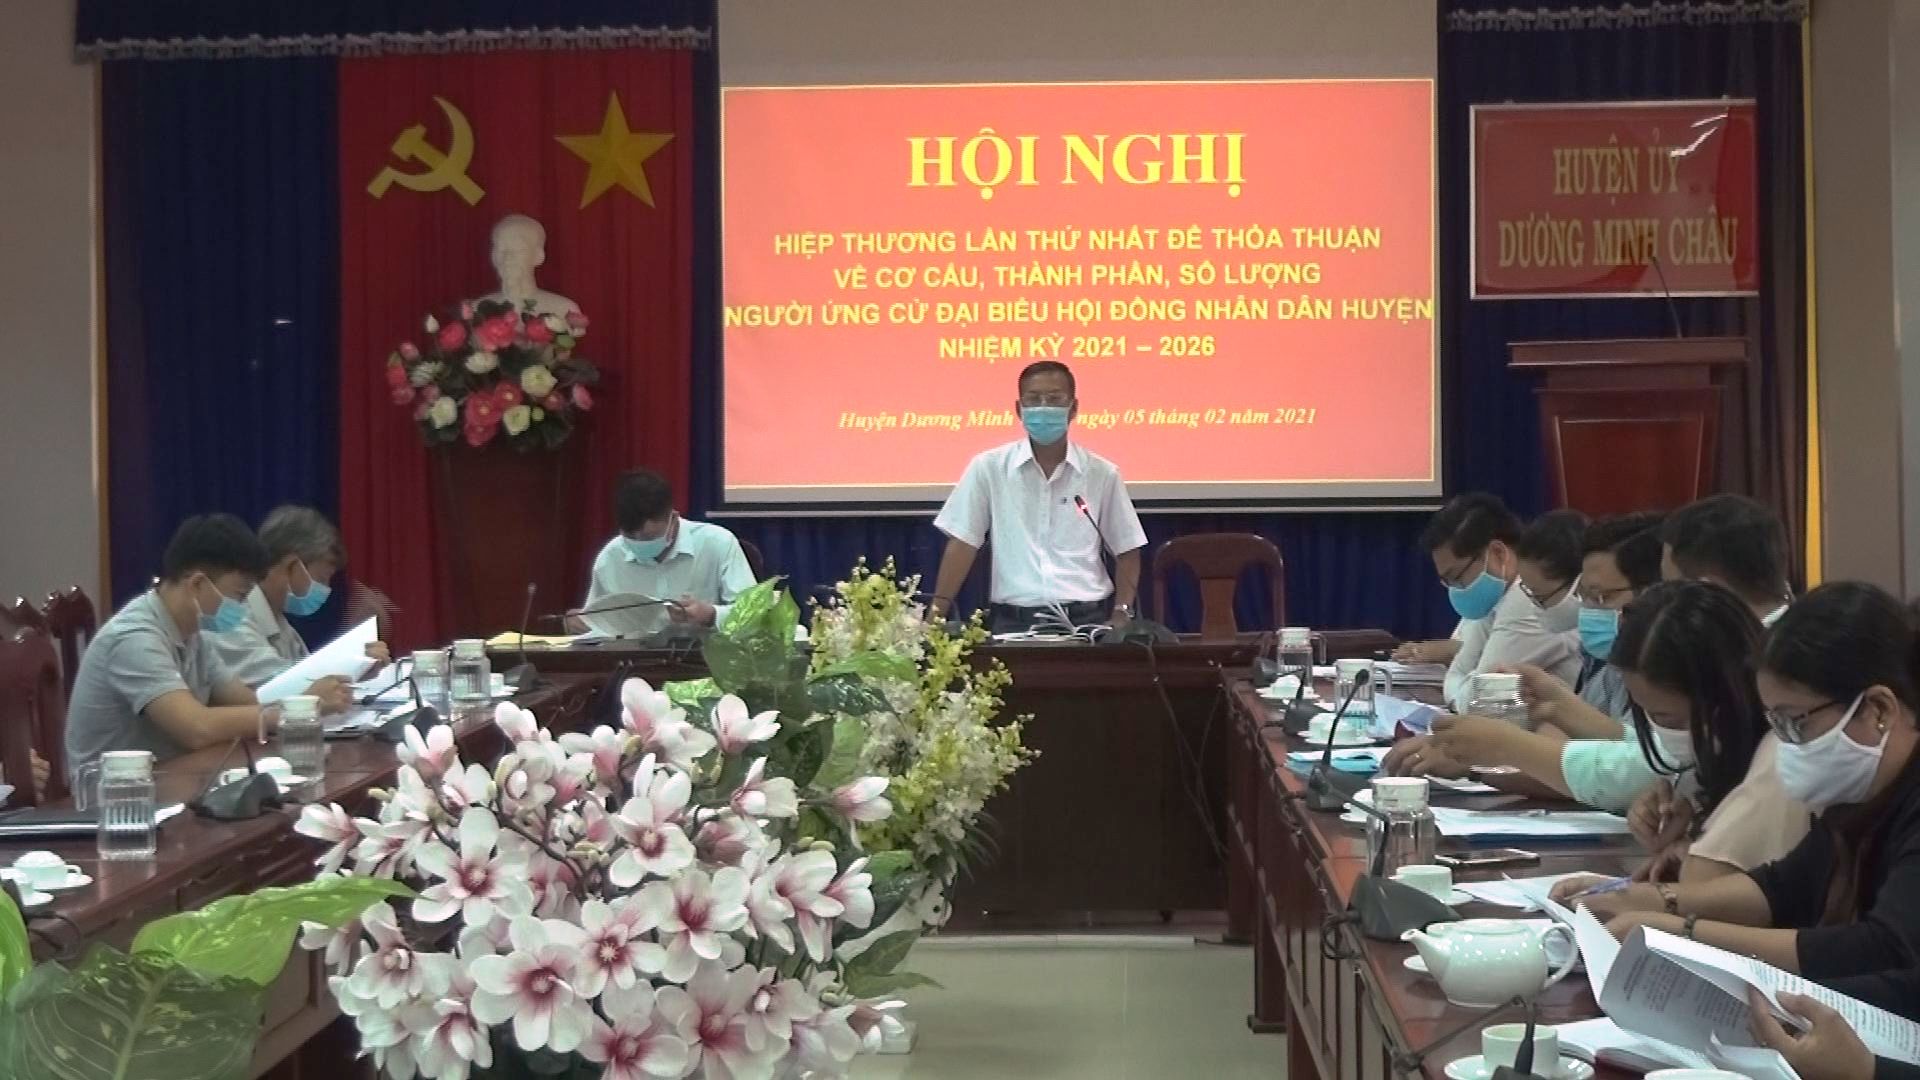 Huyện Dương Minh Châu: Hội nghị hiệp thương lần thứ nhất bầu cử Đại biểu hội đồng nhân dân huyện khóa XII, nhiệm kỳ 2021- 2026